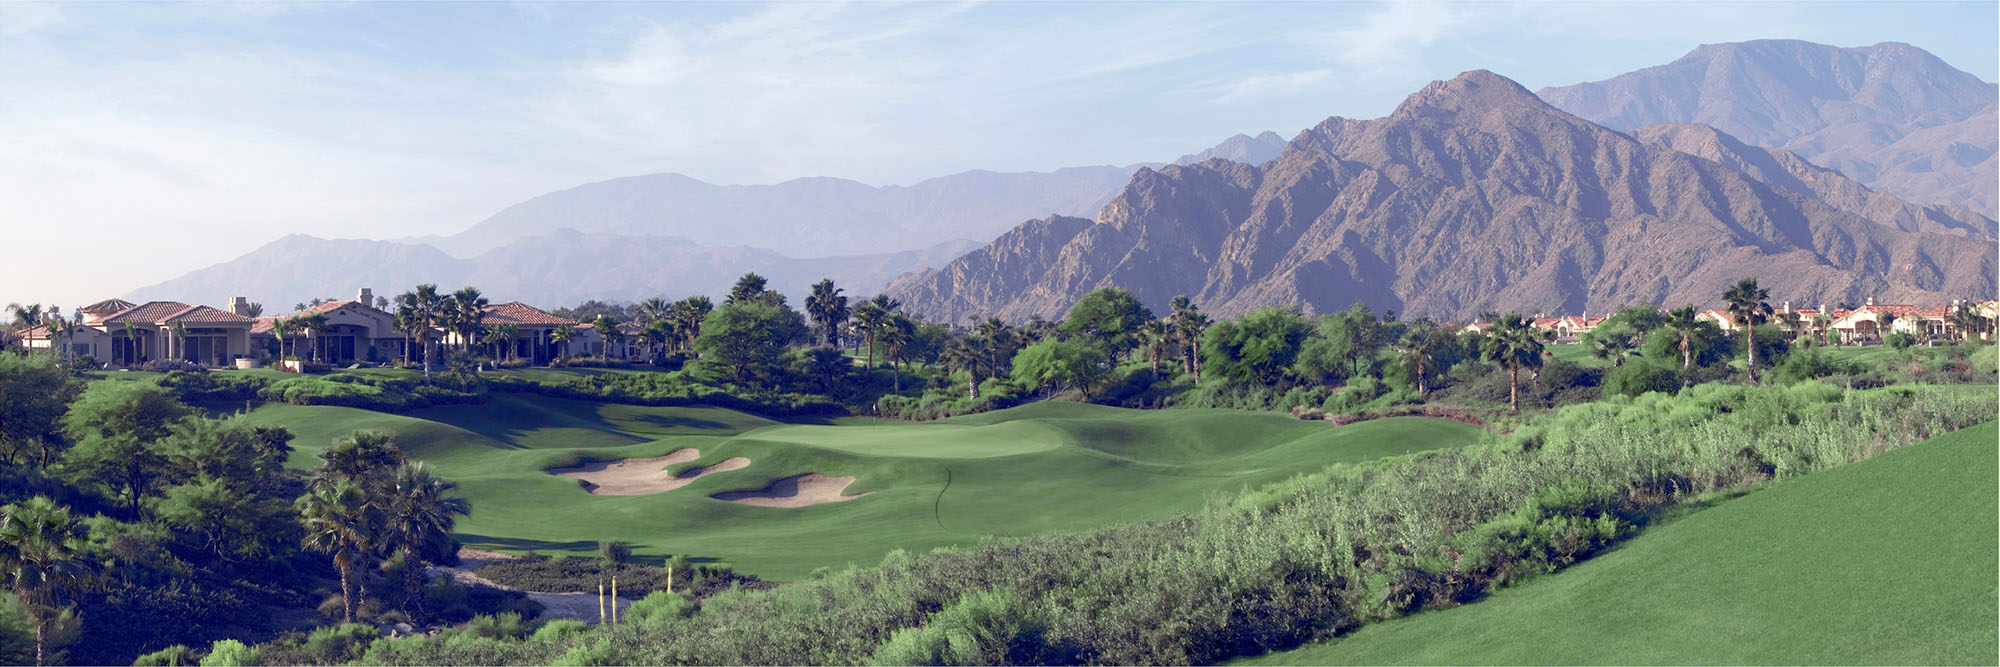 Golf Course Image - Rancho La Quinta Pate No. 14